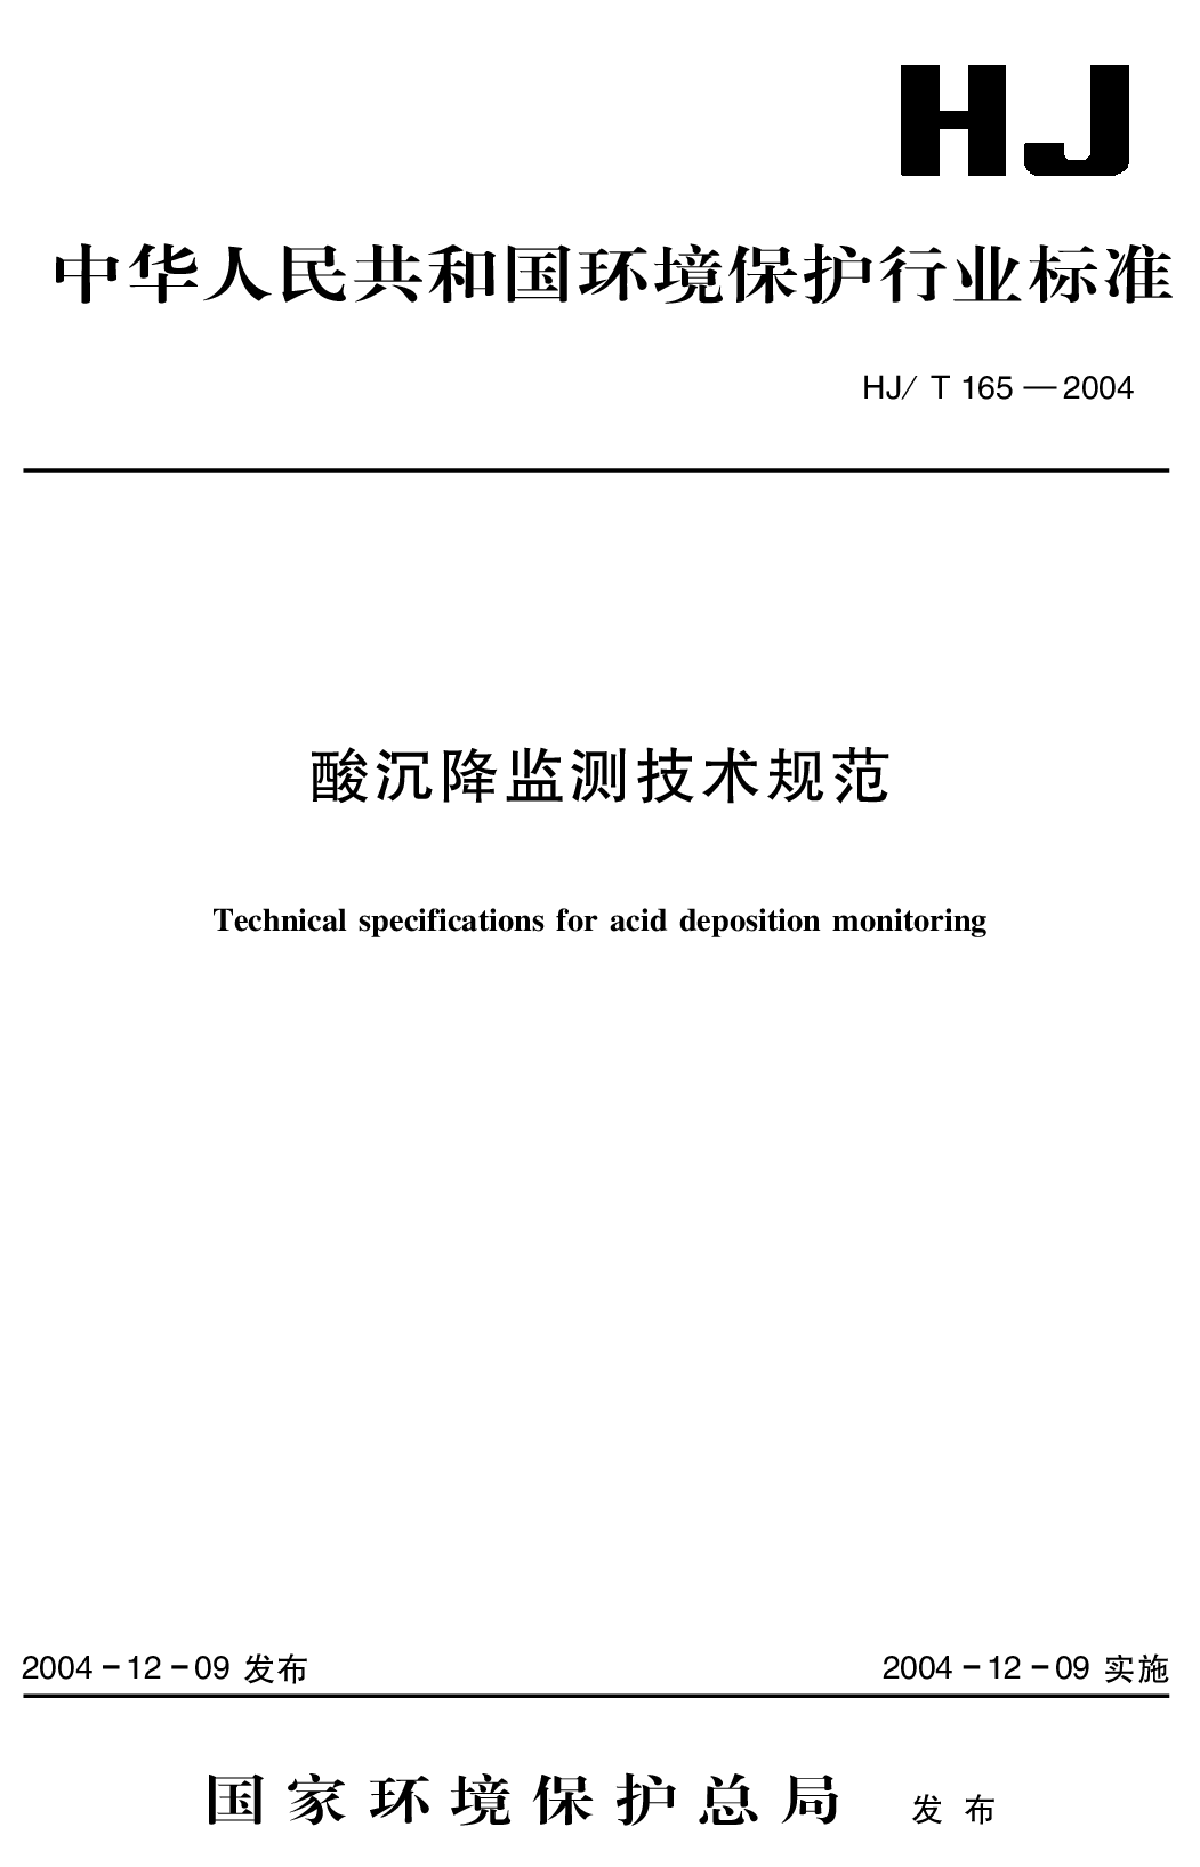 HJ_T 165-2004 酸沉降监测技术规范